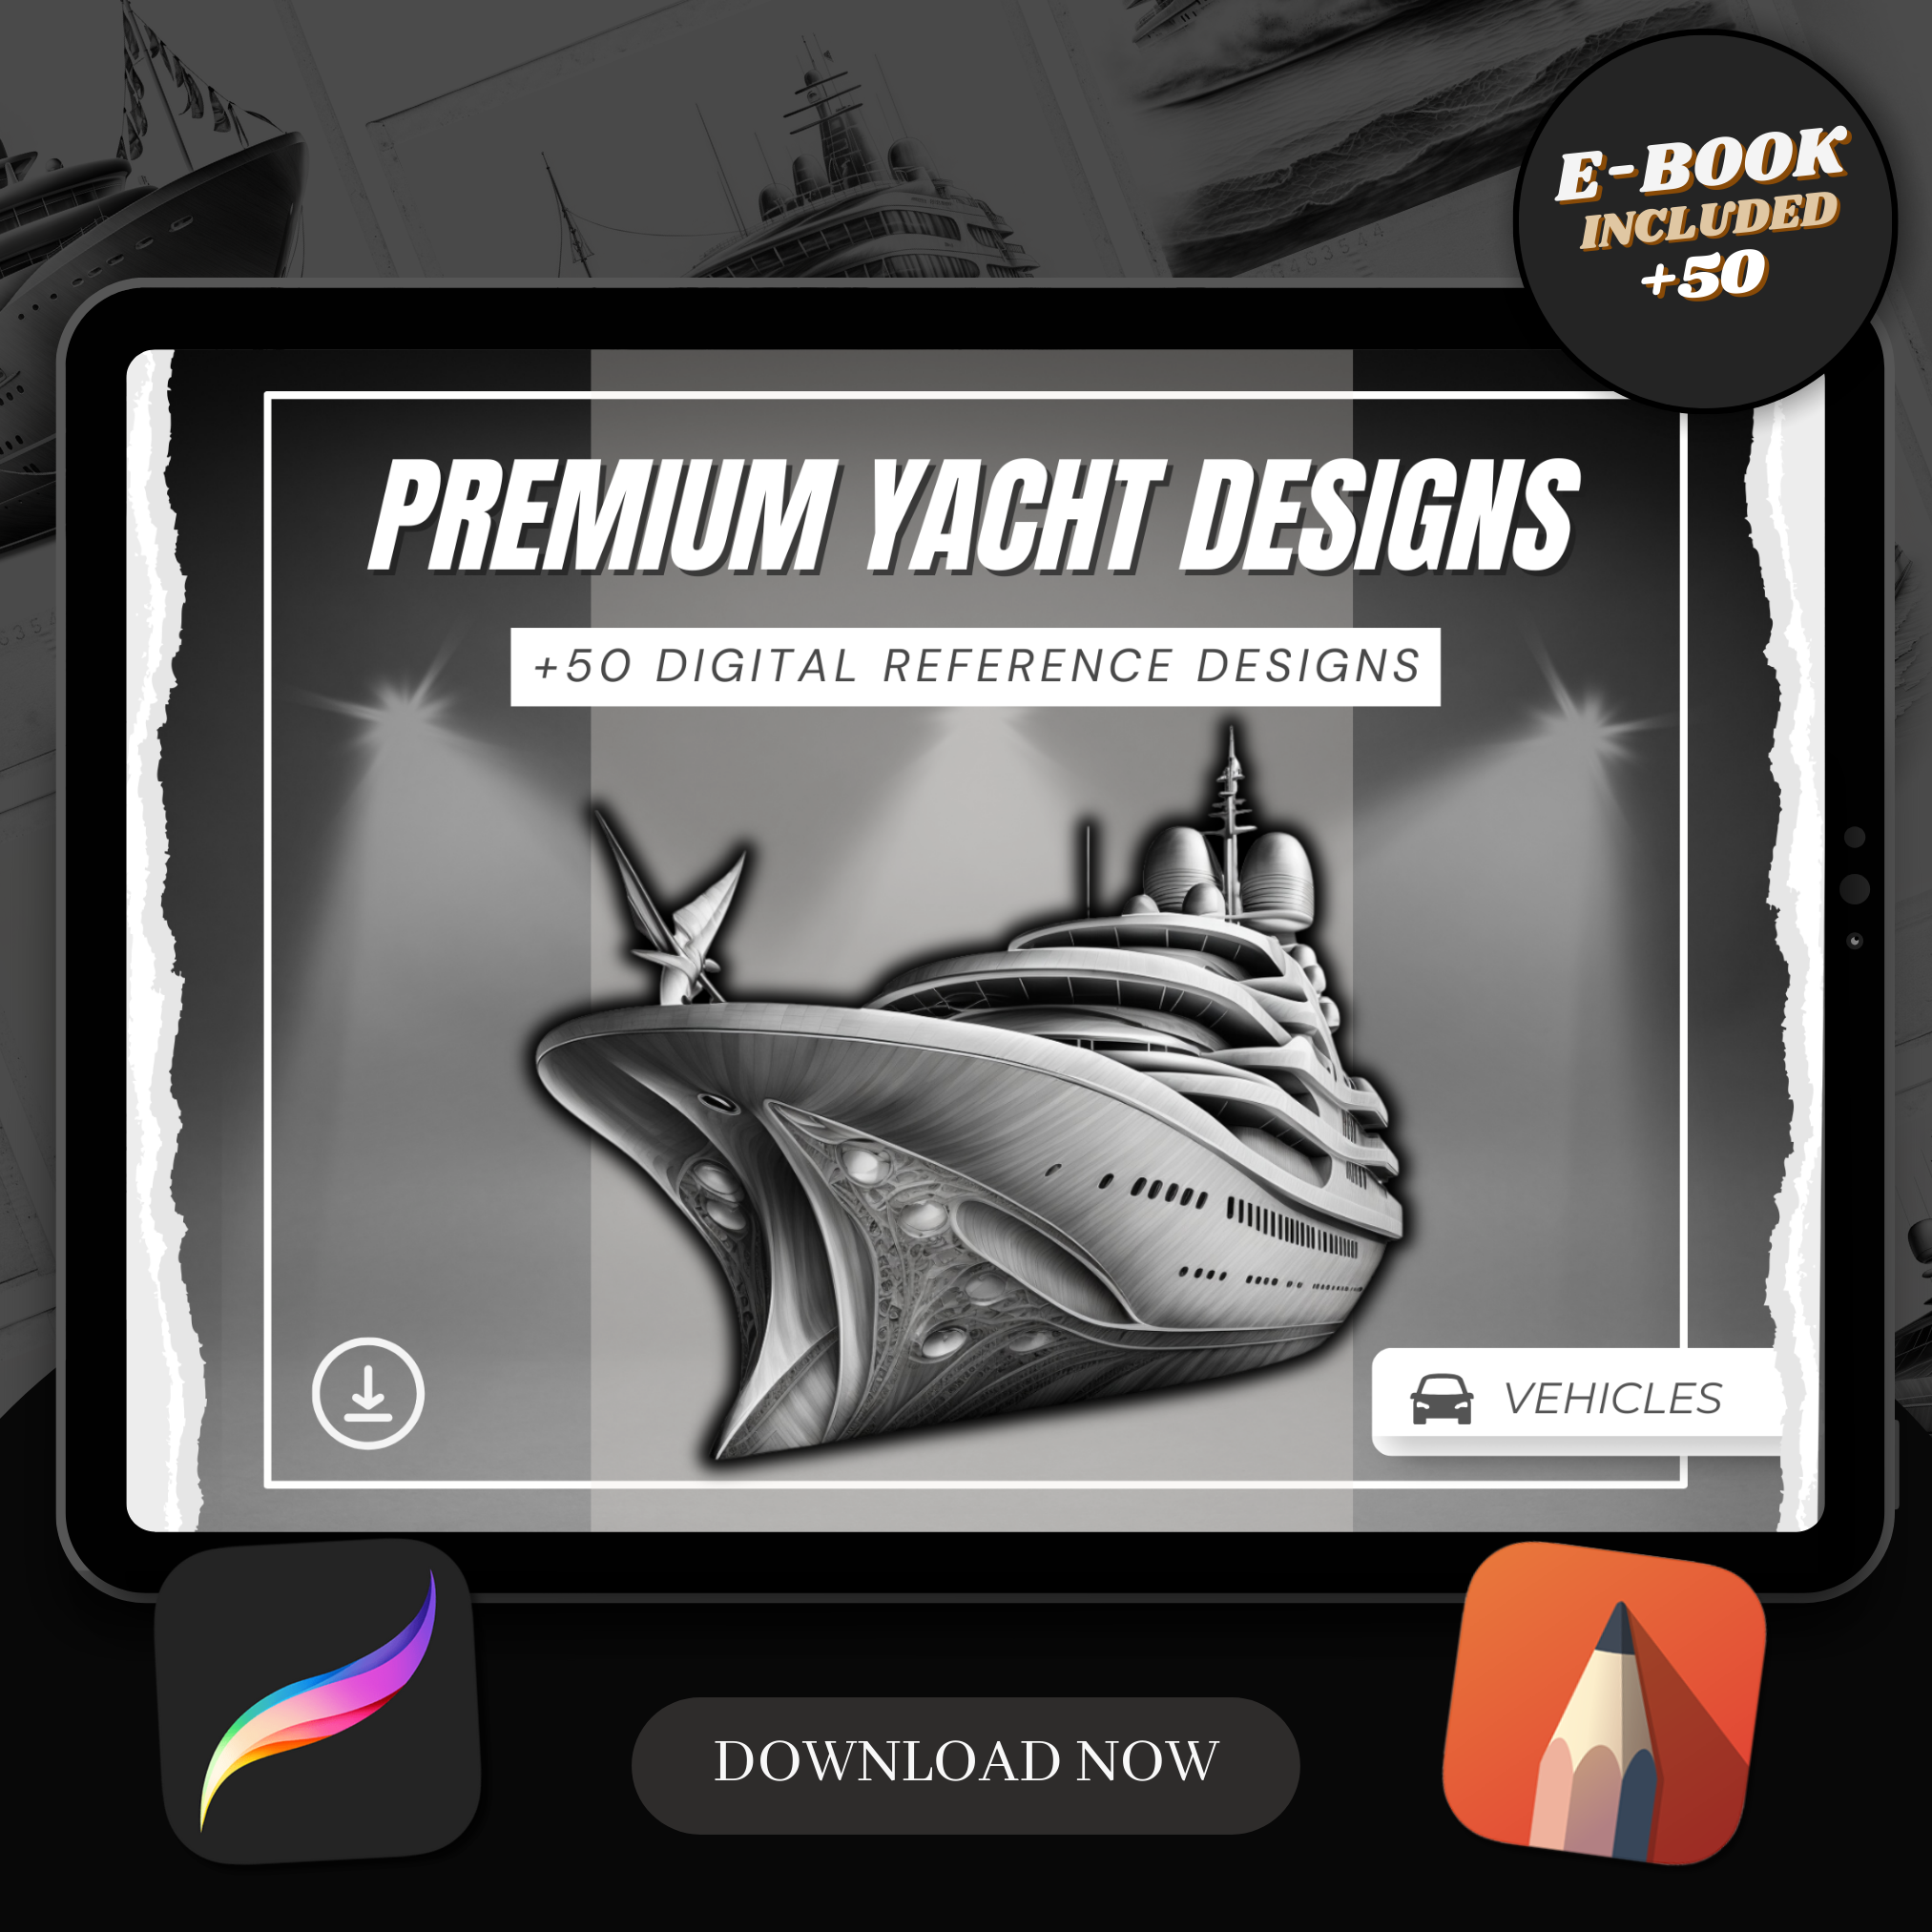 Yachts Digital Design Collection: 50 Procreate & Sketchbook Images